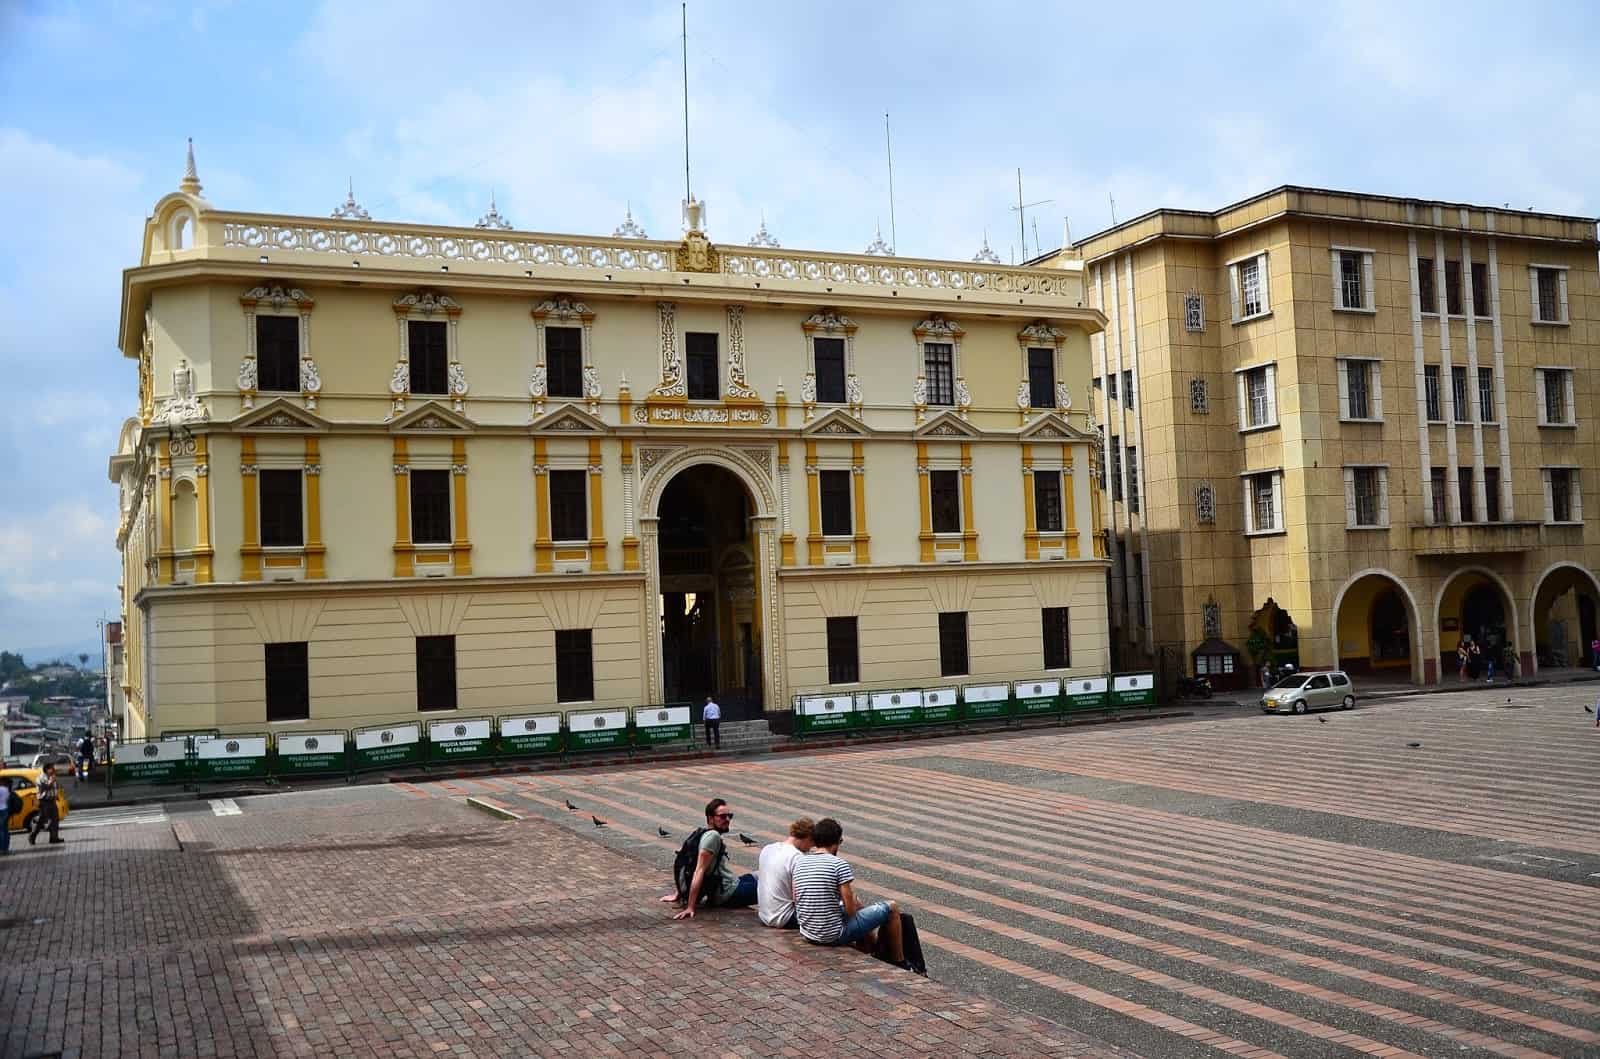 Palacio de Gobierno at Plaza de Bolívar in Manizales, Caldas, Colombia